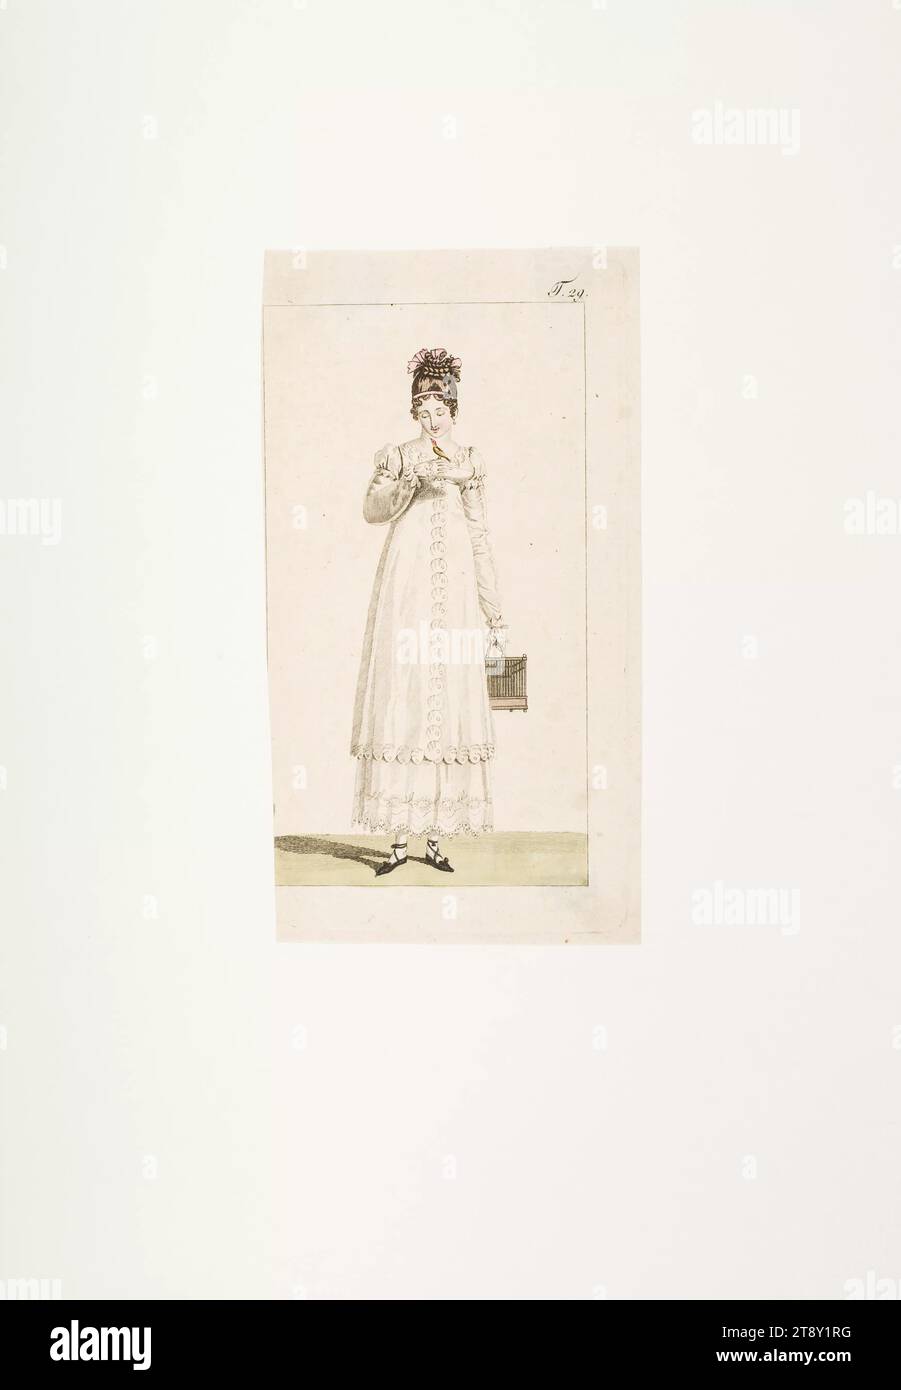 Foto della moda: "Giovane donna in abito percale", sconosciuto, 1813, carta, colorata, incisione su piastra di rame, altezza 20, 7 cm, larghezza 9, 8 cm, dimensioni piastra 15, 3 x 8, 5 cm, moda, borghesia, piatti alla moda, copricapo, donna, vestito, abito, la Vienna Collection Foto Stock